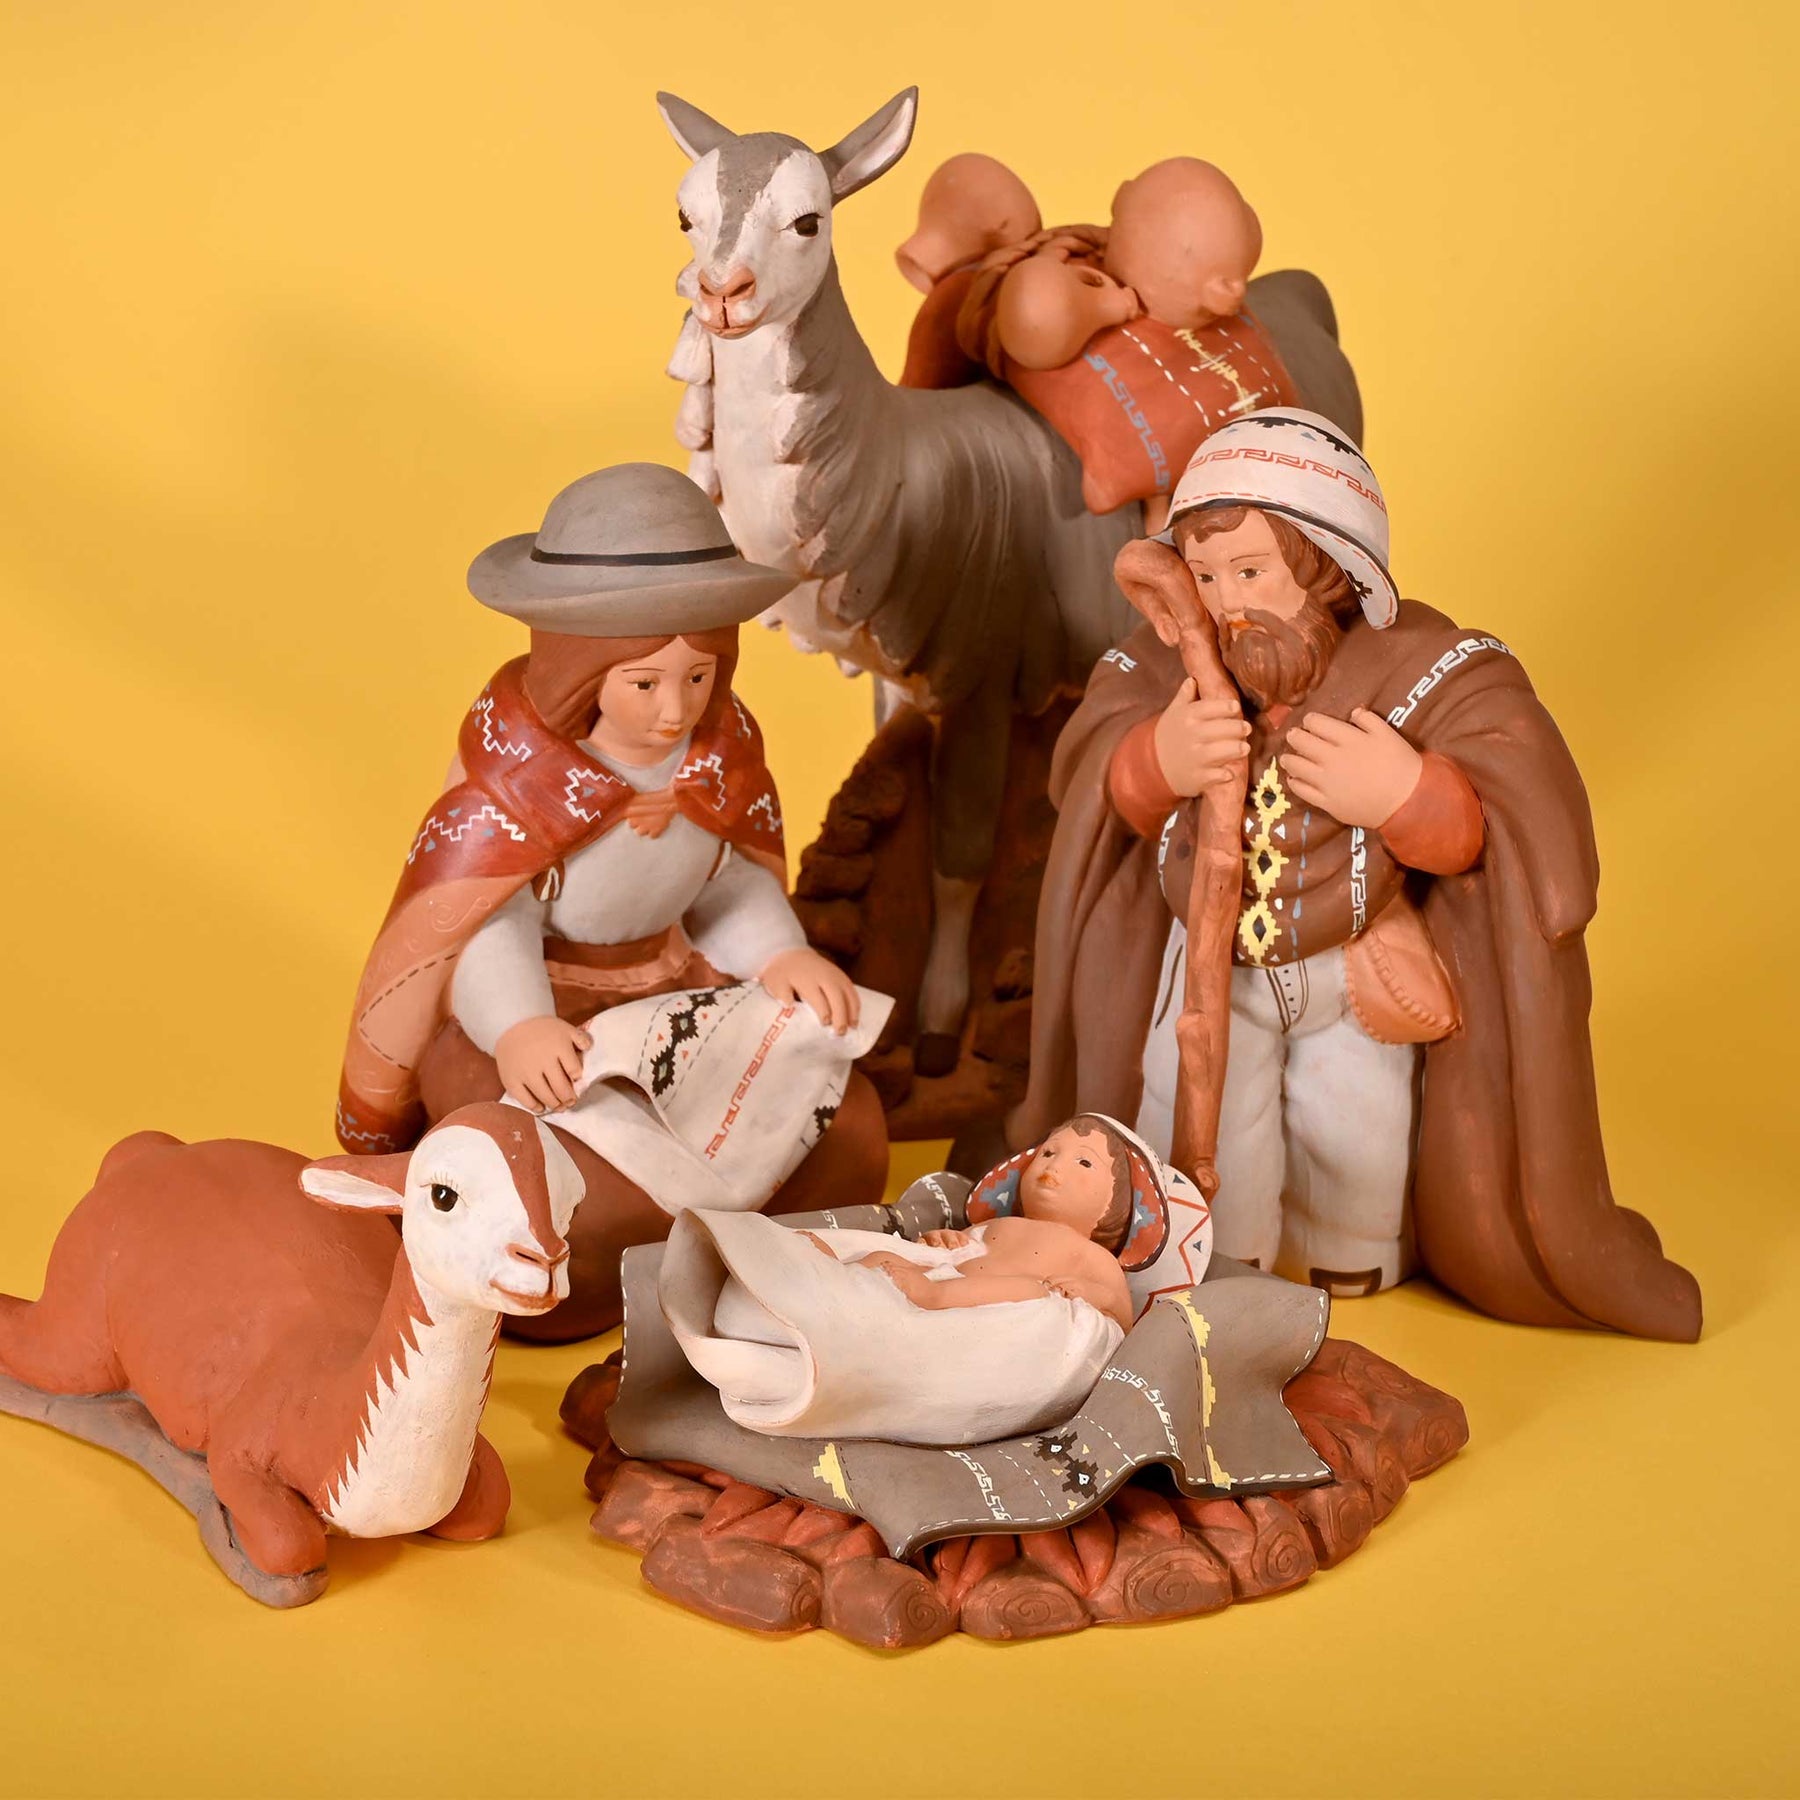 Holy Family and Llama - Fine Ceramic Nativity Set of 5